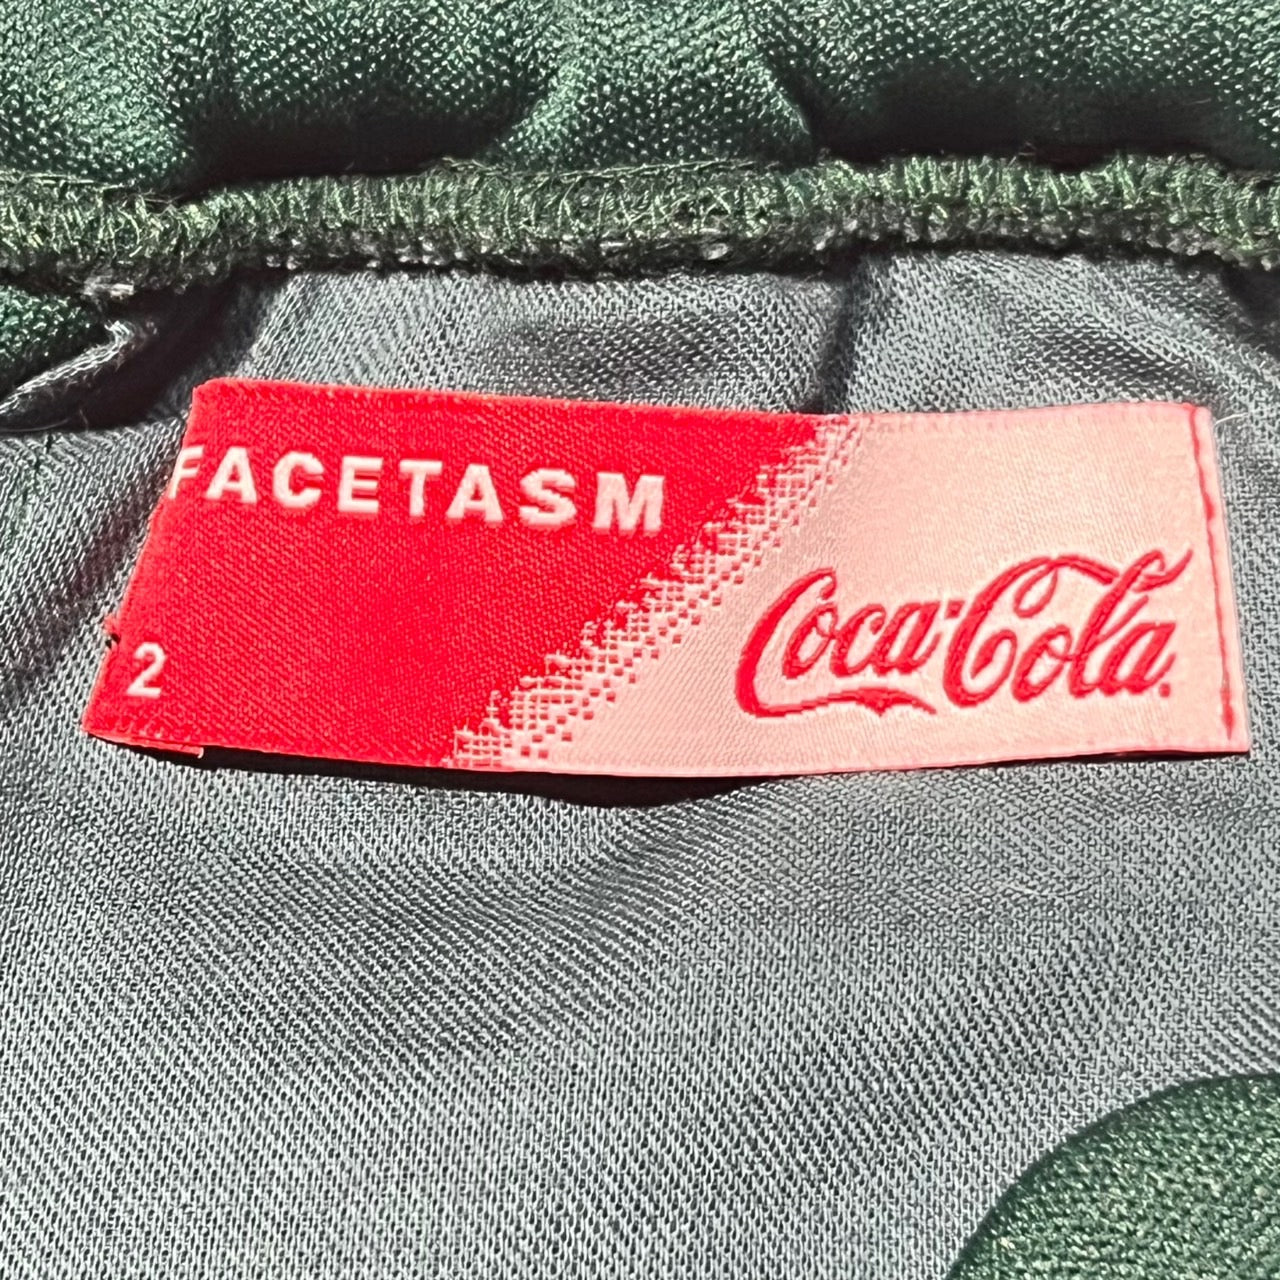 FACETASM×Coca-Cola(ファセッタズム×コカ・コーラ) IT S A REAL THING SKIRT/スカート PIPPA-SK-W01 2(Mサイズ程度) グリーン